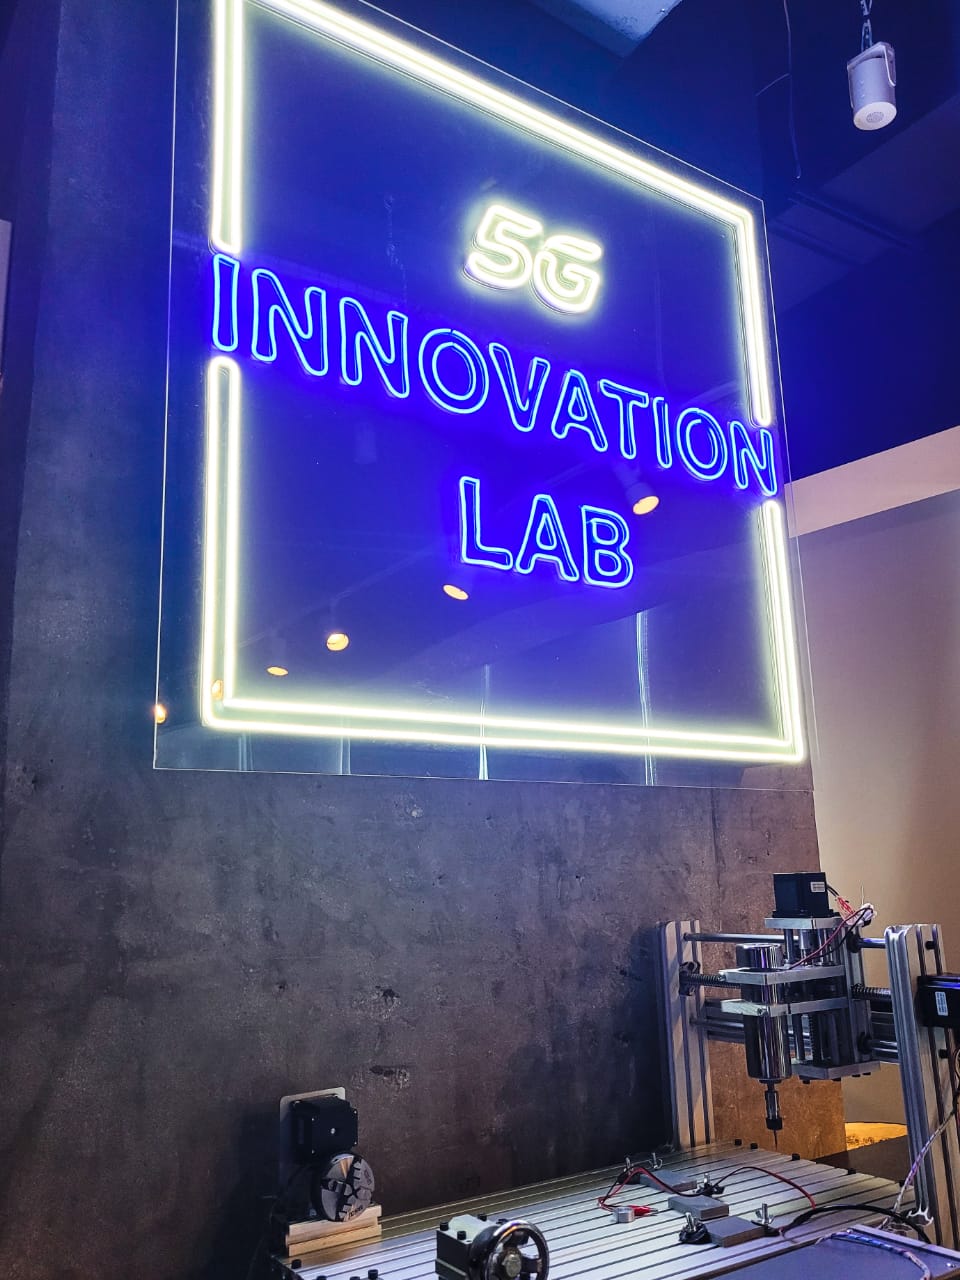 Intel se suma como aliado al Laboratorio de Innovación 5G de AT&T México